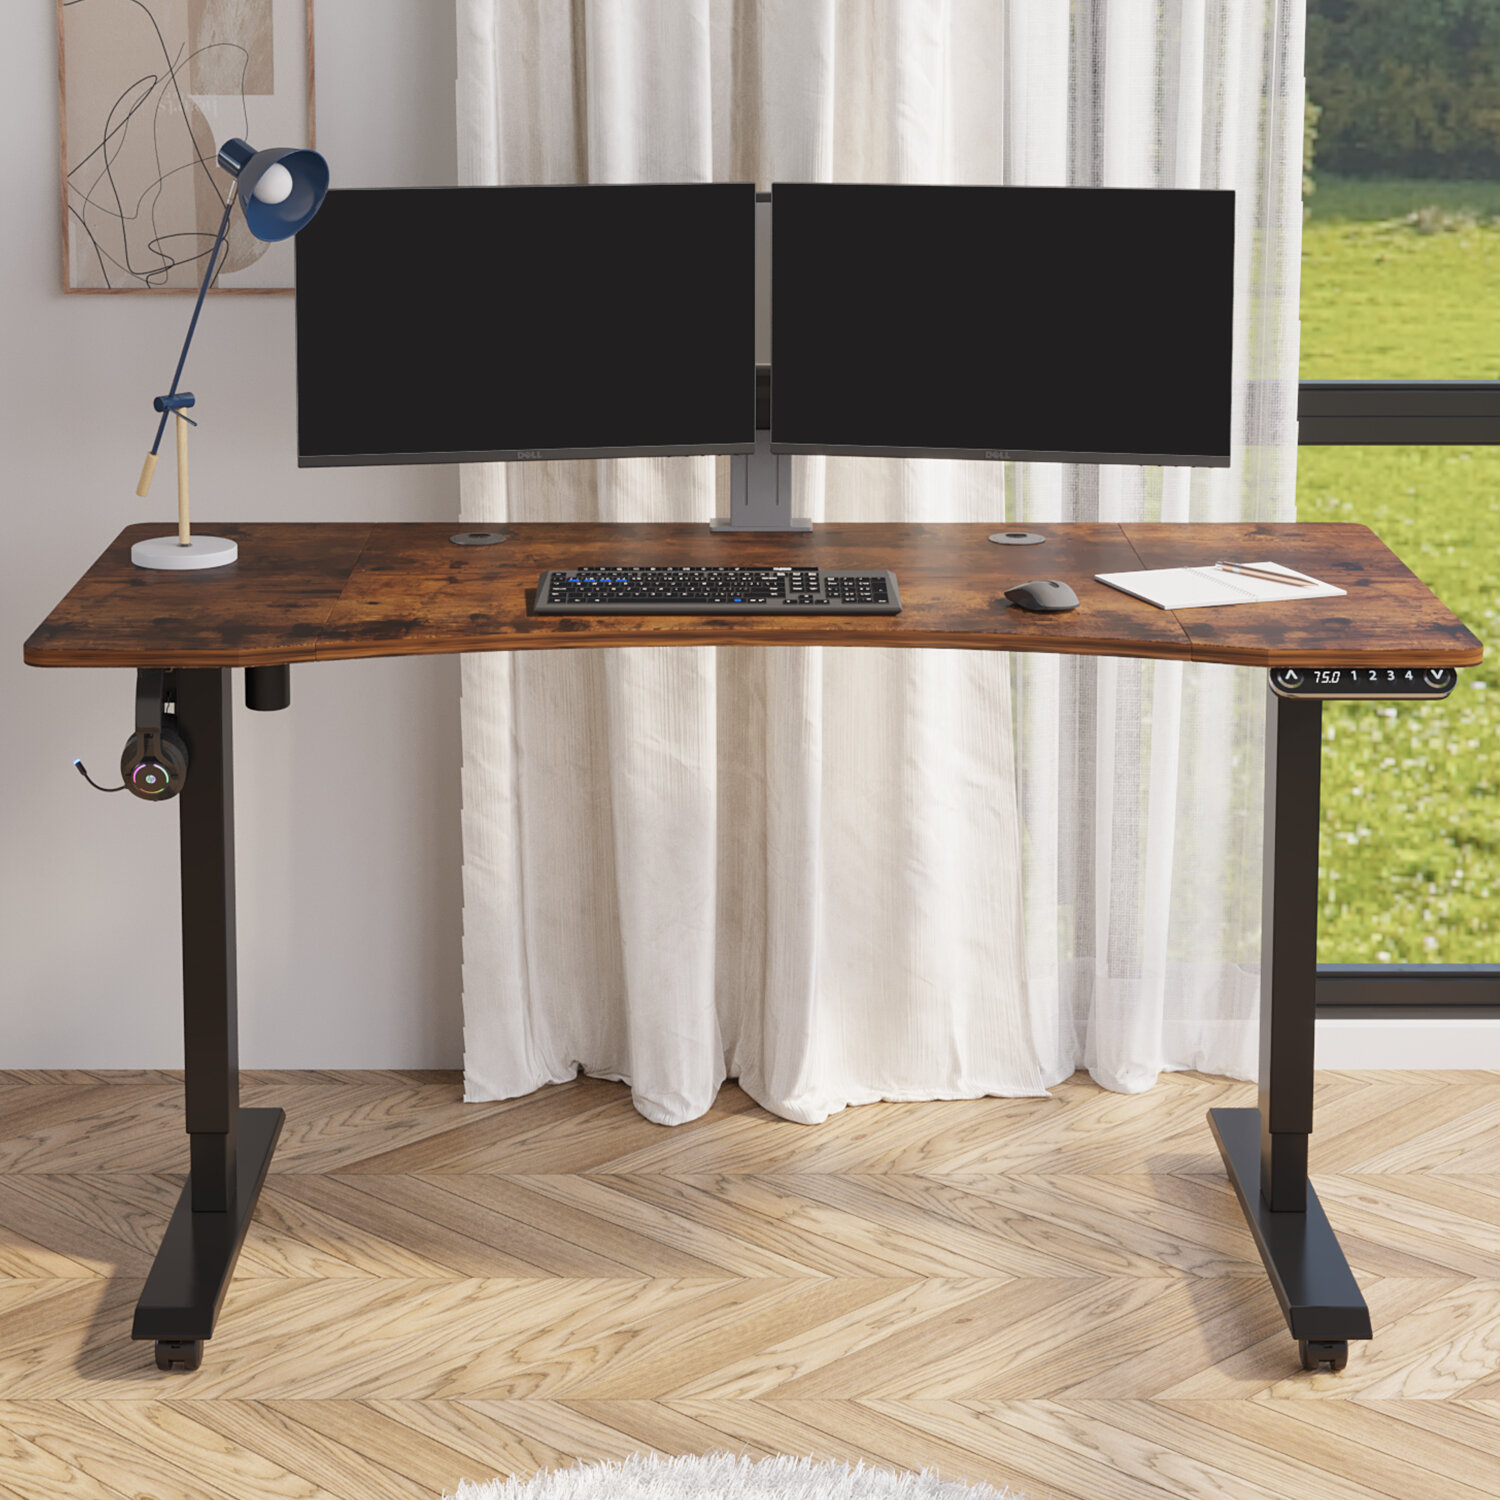 https://assets.wfcdn.com/im/81039787/compr-r85/1895/189523207/leoba-55curved-adjustable-height-standing-desk.jpg